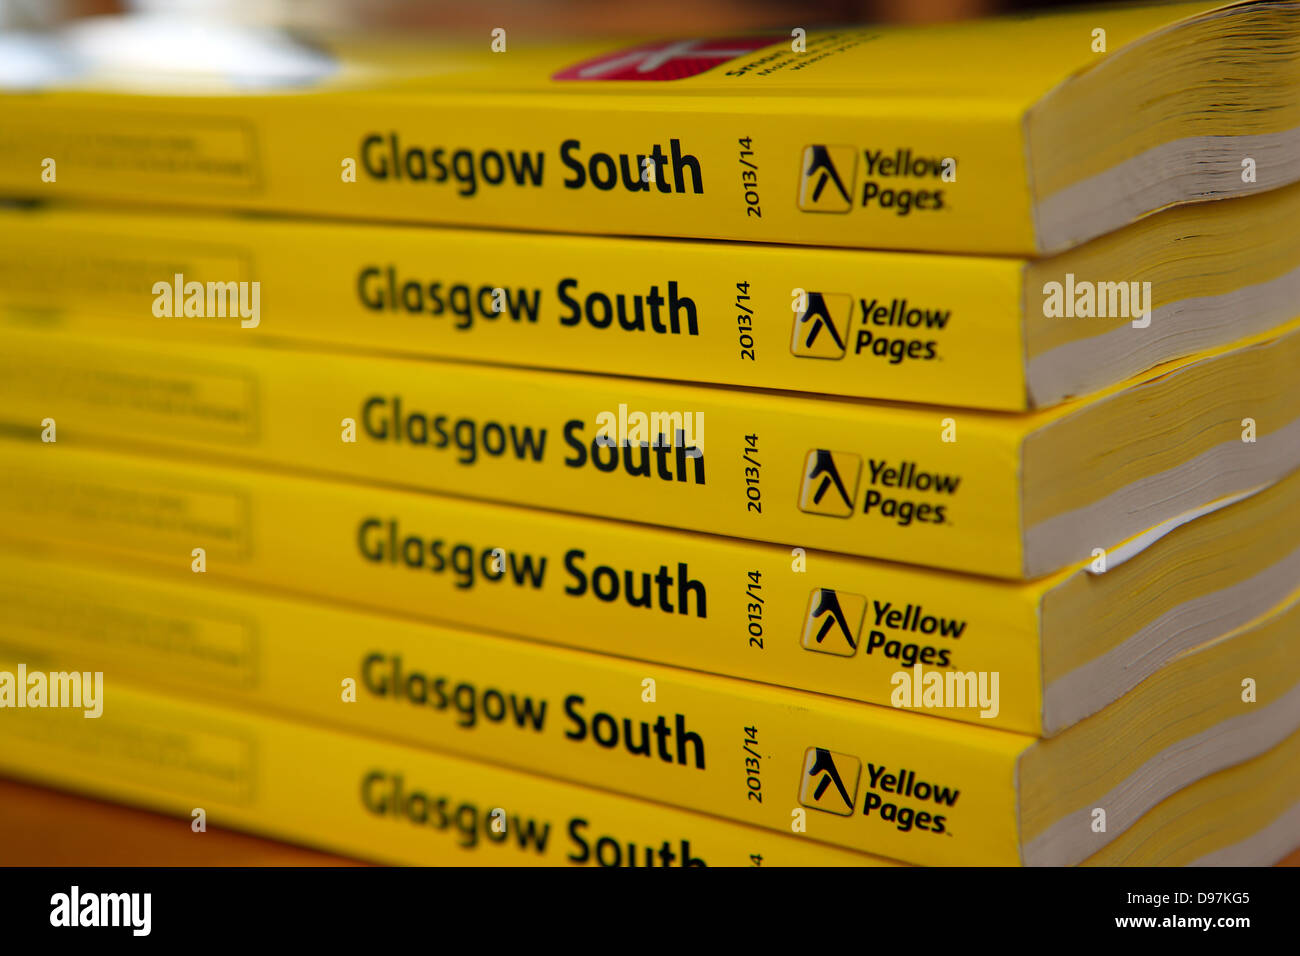 Annuaires Pages jaunes pour Glasgow South 2013/14 Banque D'Images